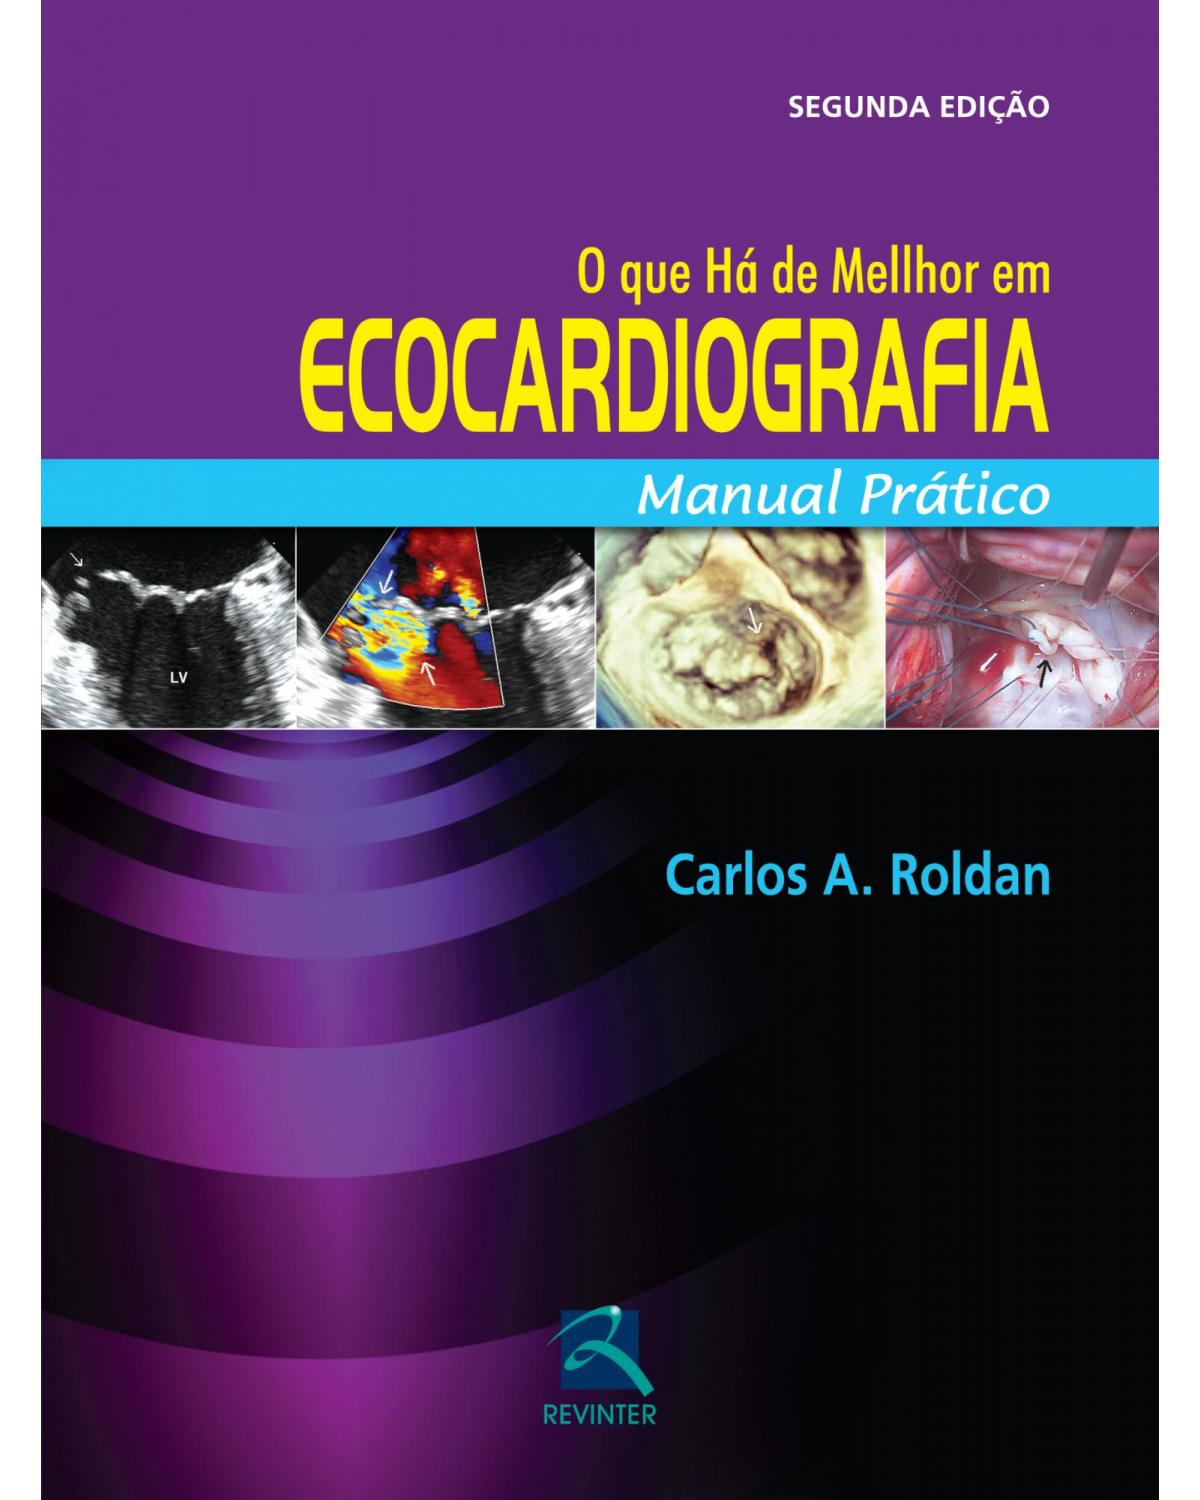 O que há de melhor em ecocardiografia - manual prático - 2ª Edição | 2014